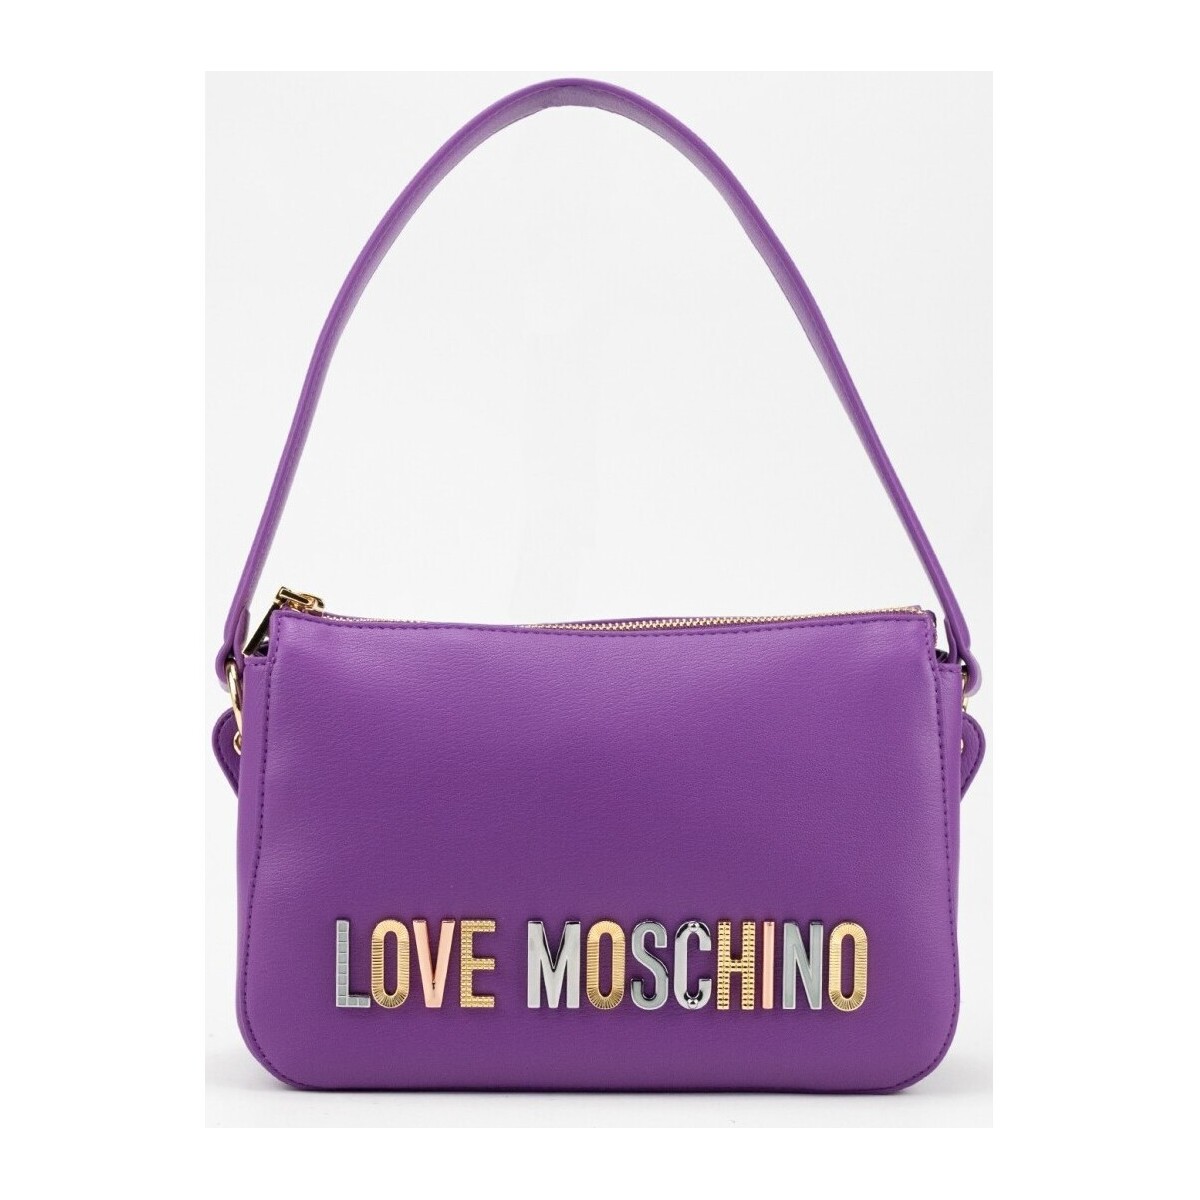 Sacs Femme Sacs Love Moschino 32204 Violet